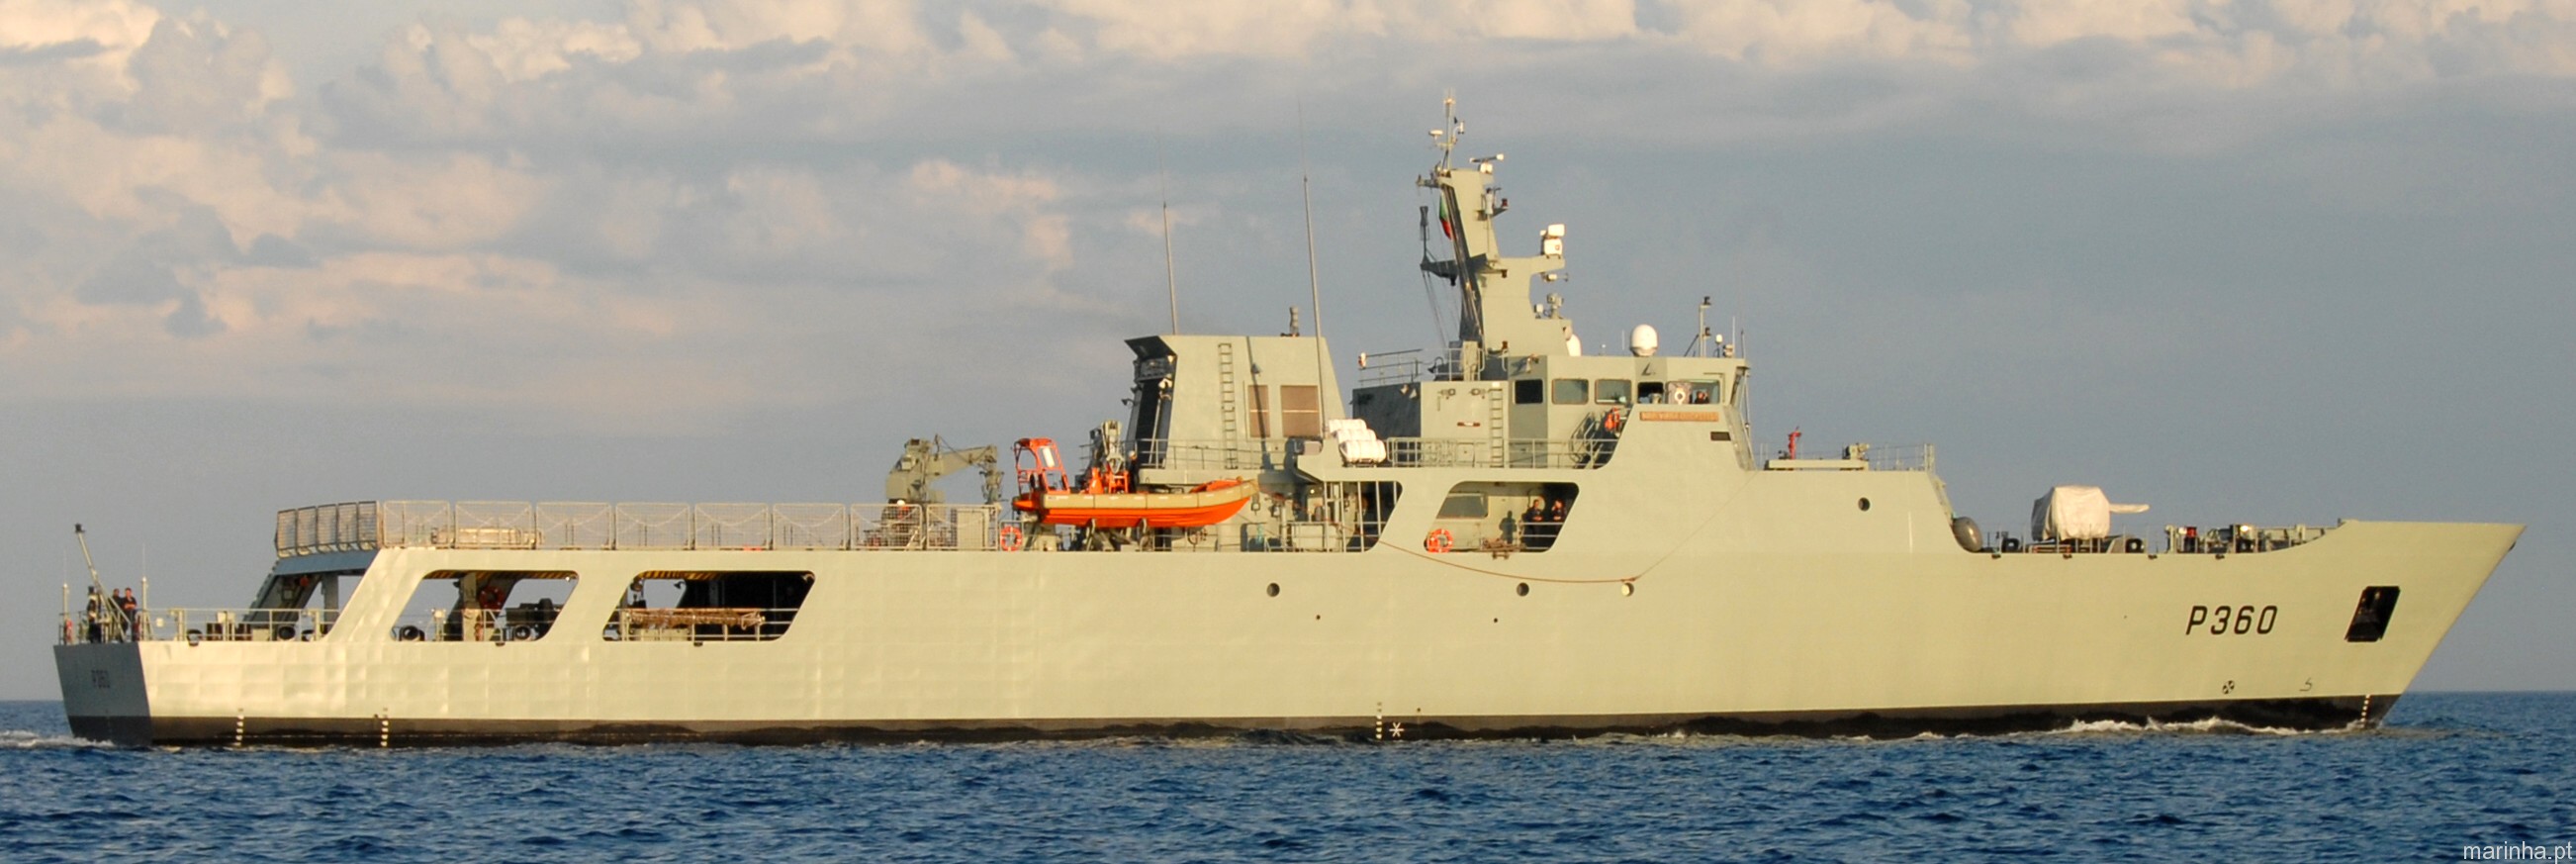 p-360 nrp viana do castelo class offshore patrol vessel opv portuguese navy marinha npo2000 09